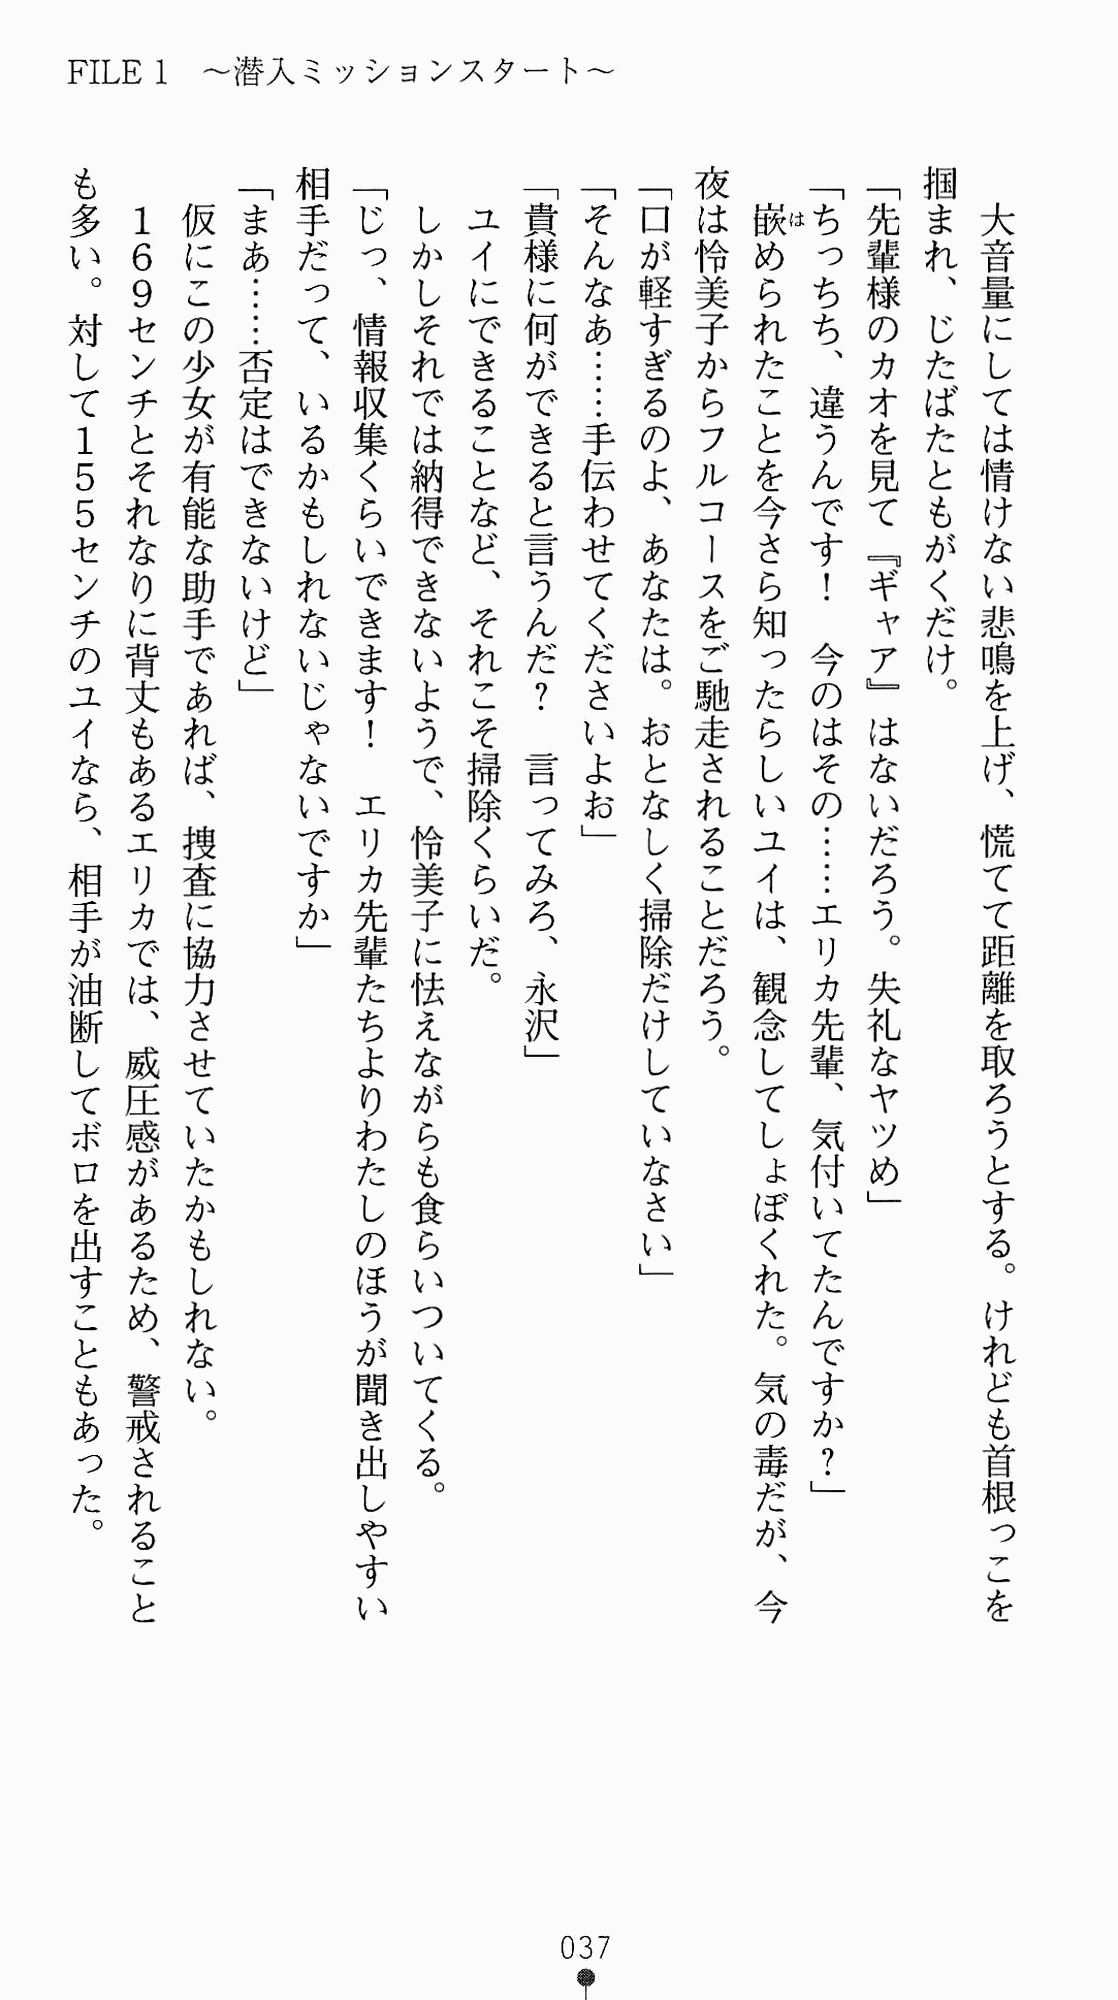 [Kagura Youko, Takahama Tarou] Shiritsu Tantei Takasuga Erika no Jikenbo 2 - Chijouha AV Satsuei 24-ji 52